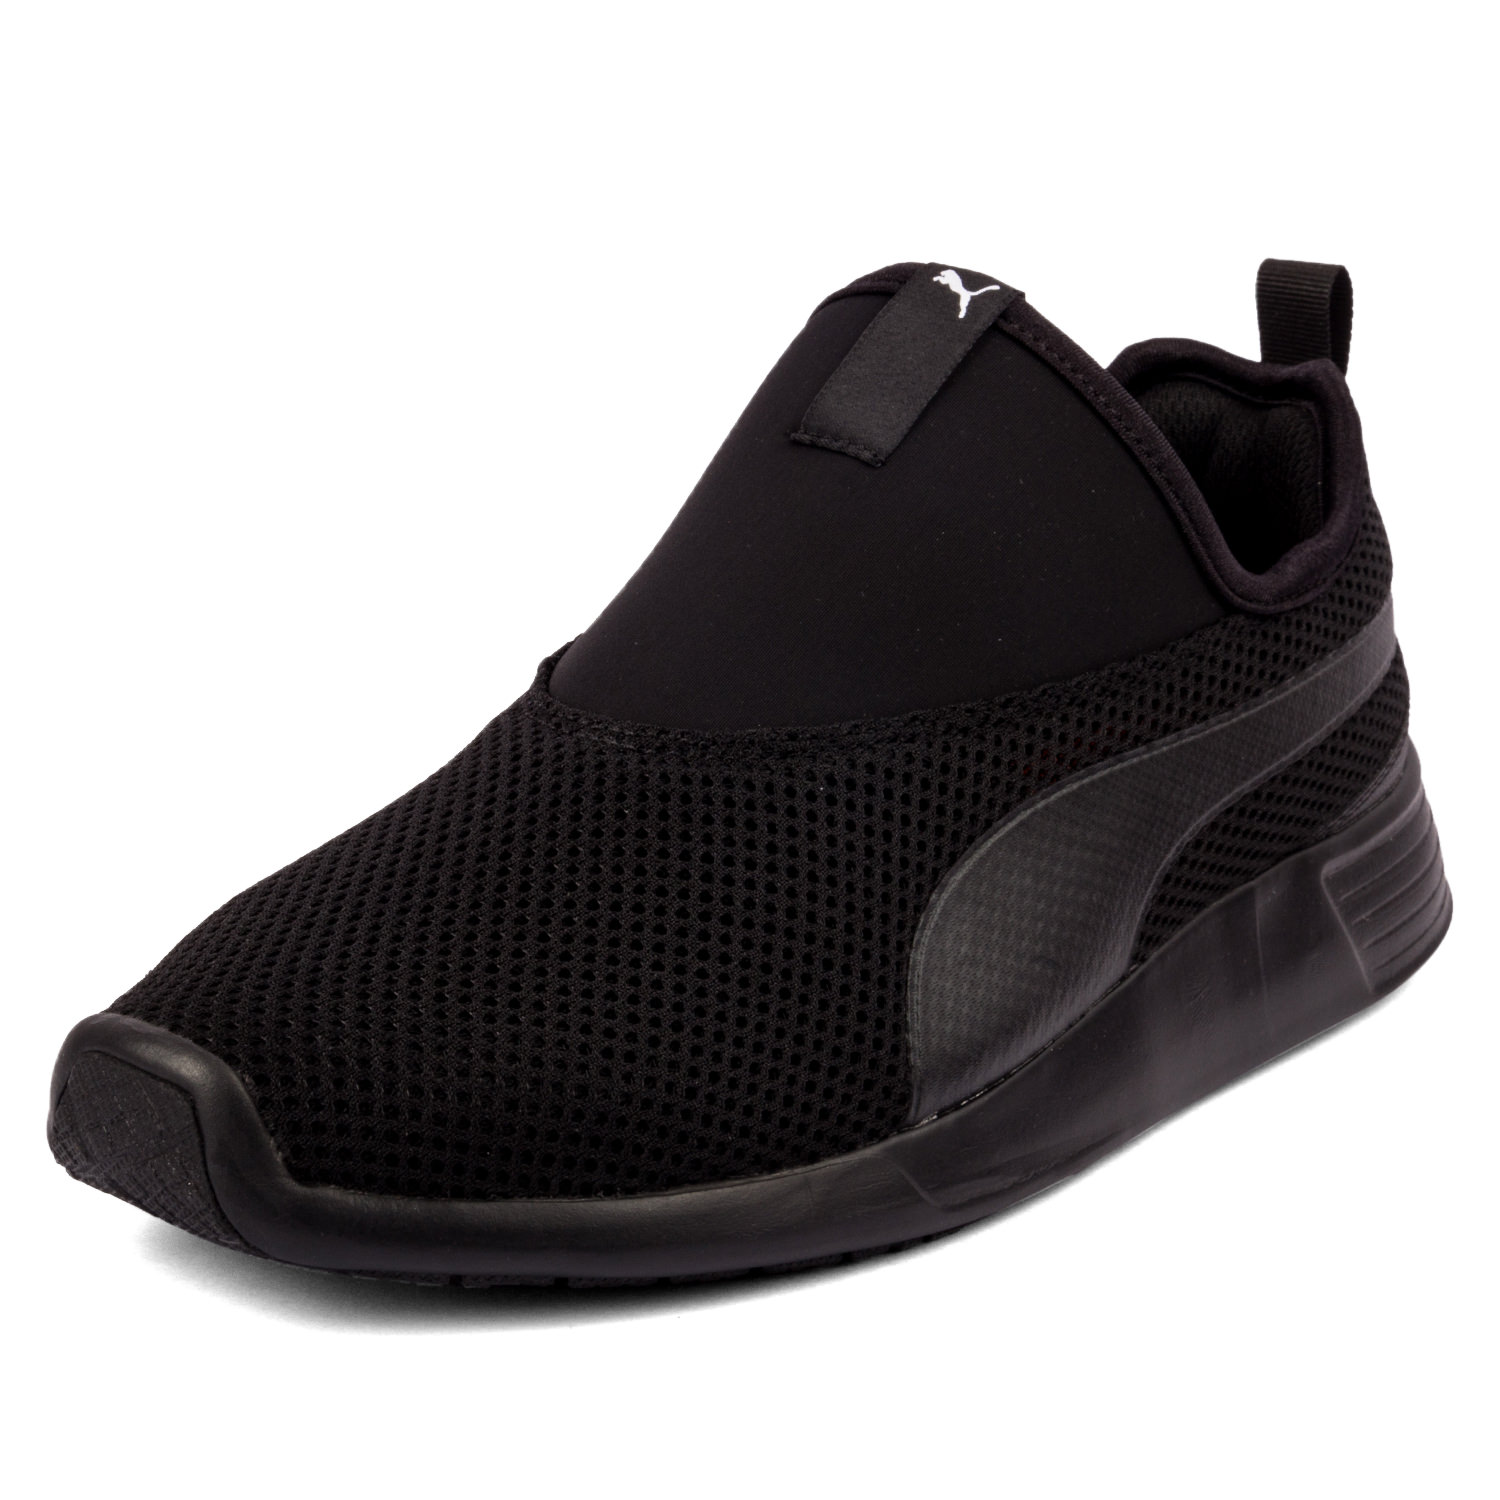 Buy Puma St Trainer Evo Slip On V2 Idp Shoes For Men ...